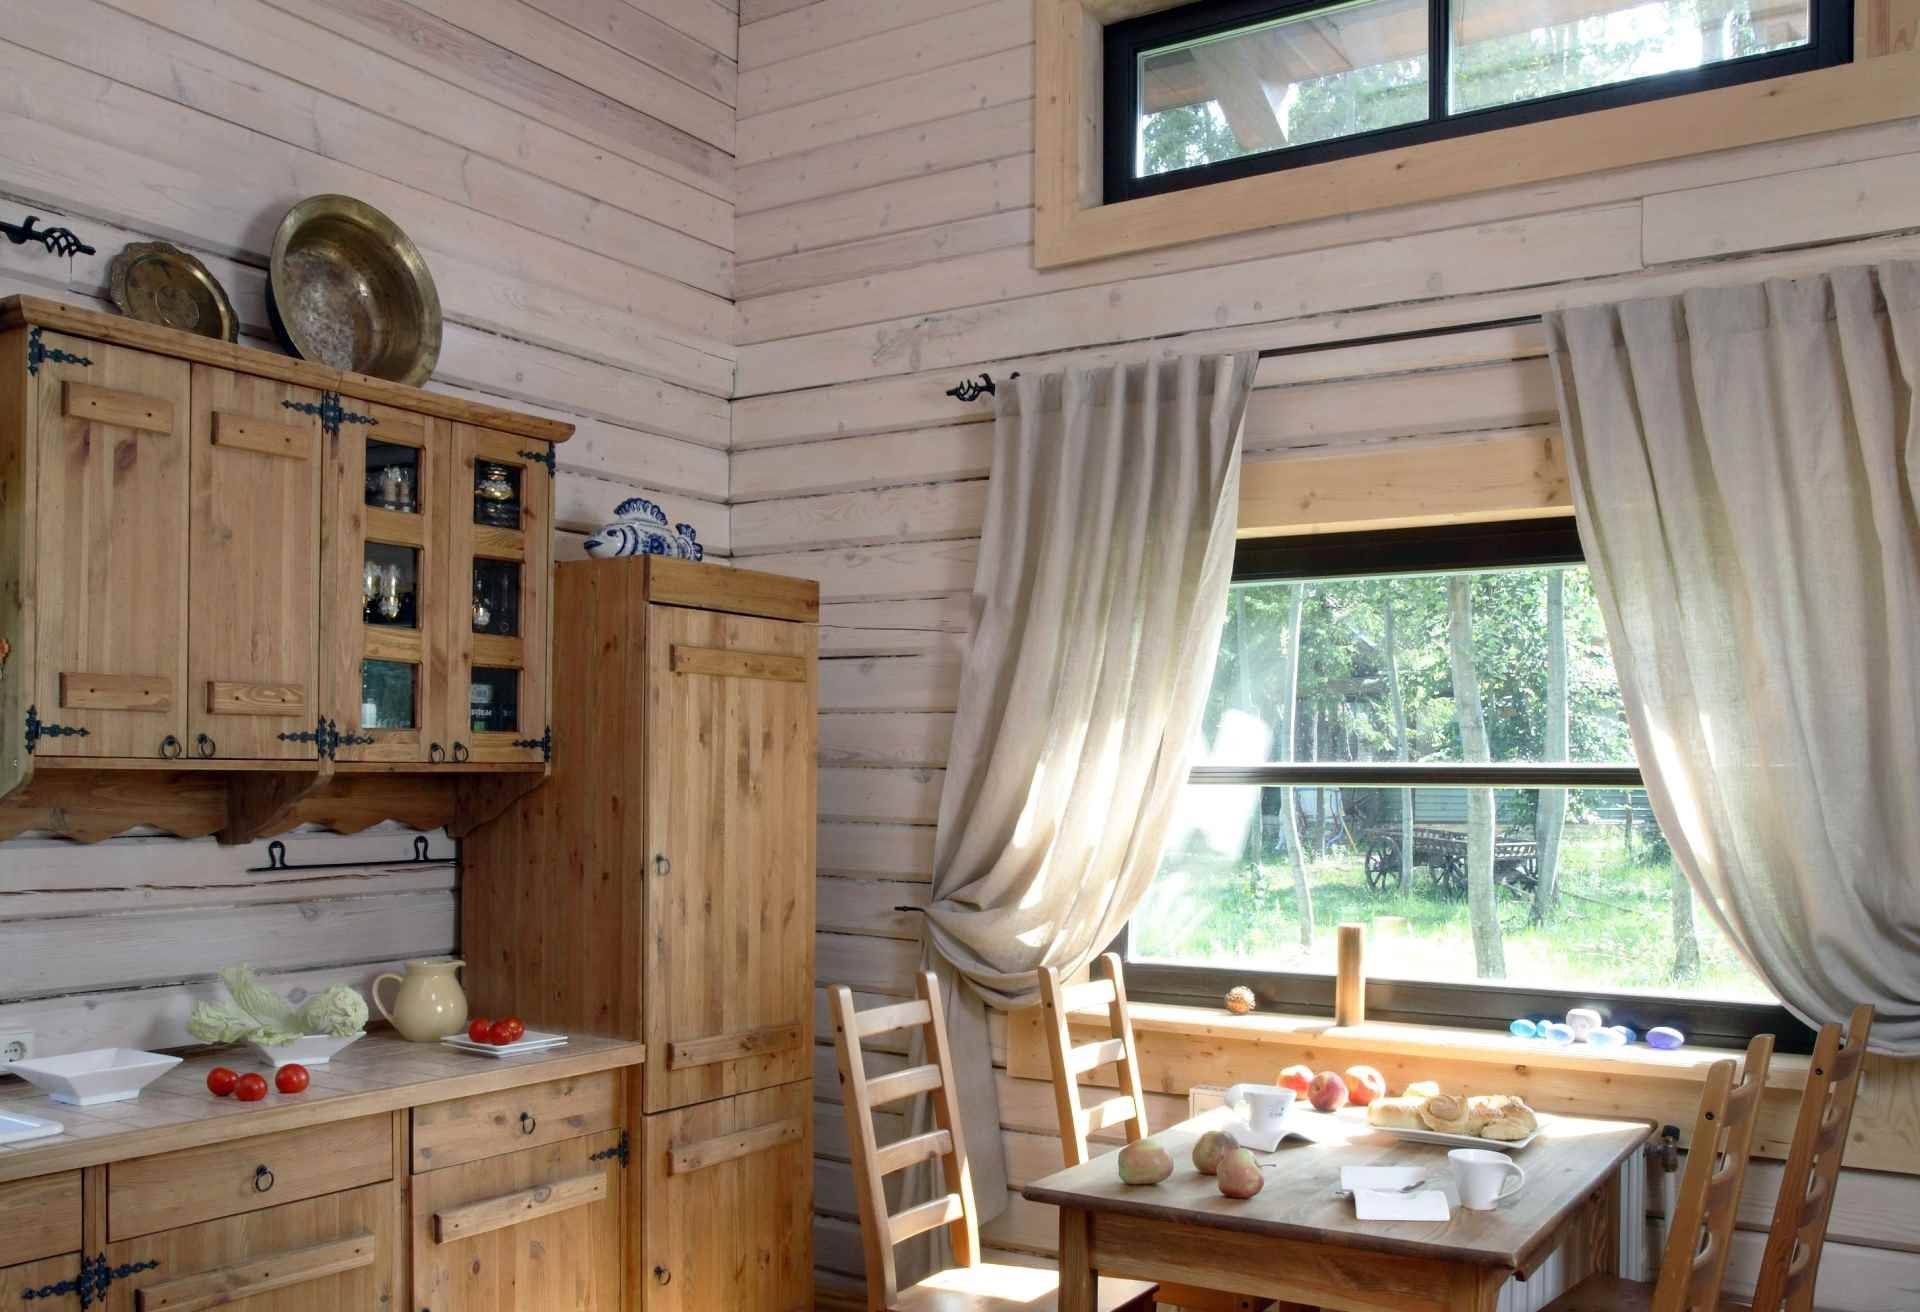 Кухня в деревянном доме - дизайн интерьера в доме из бруса, из бревна, в том числе кухня-гостиная и столовая, маленькая и белая кухни